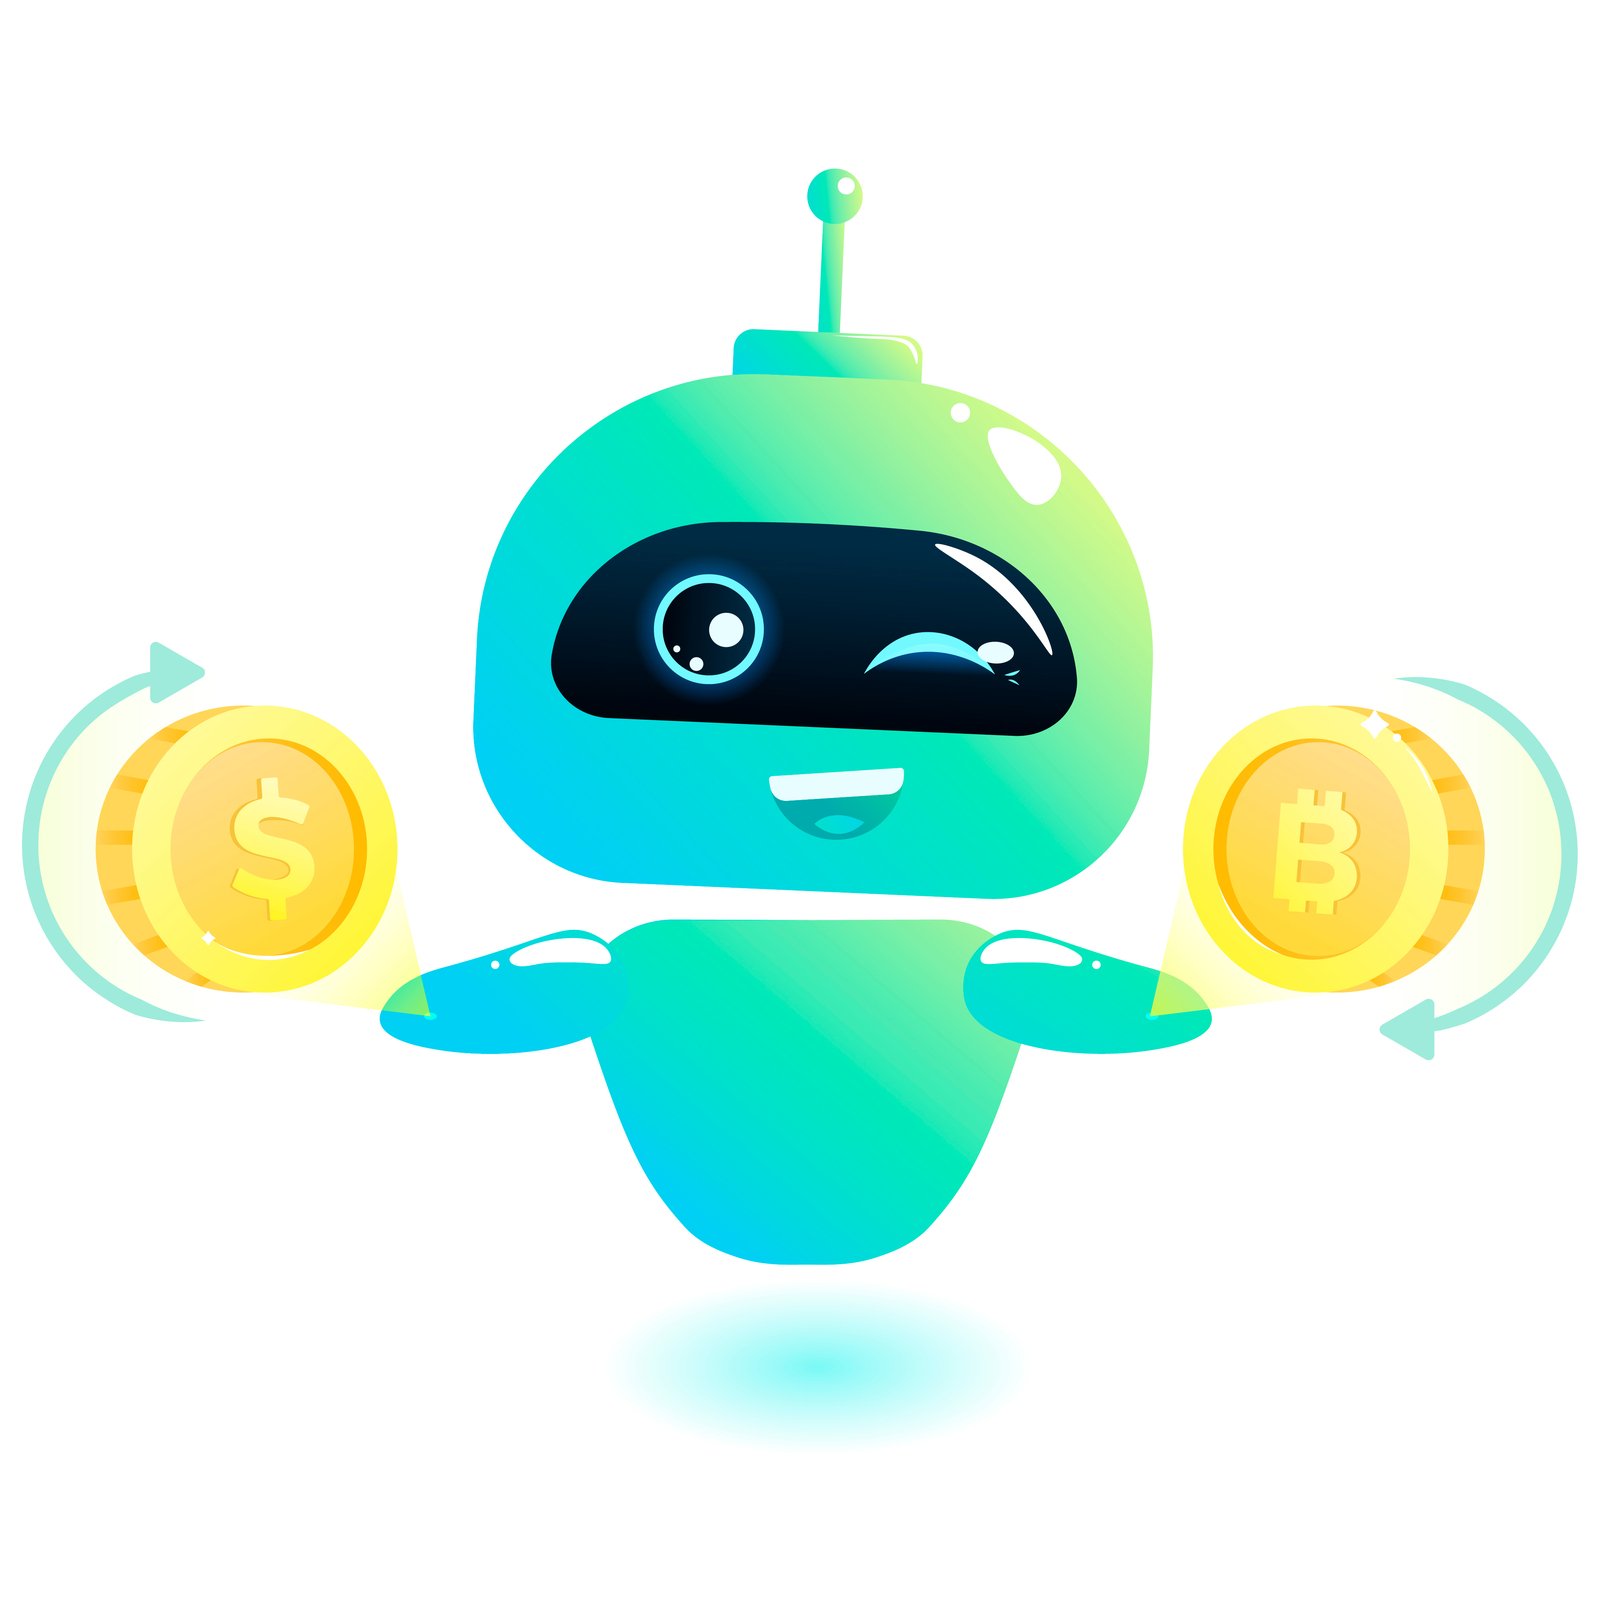 robot bitcoin